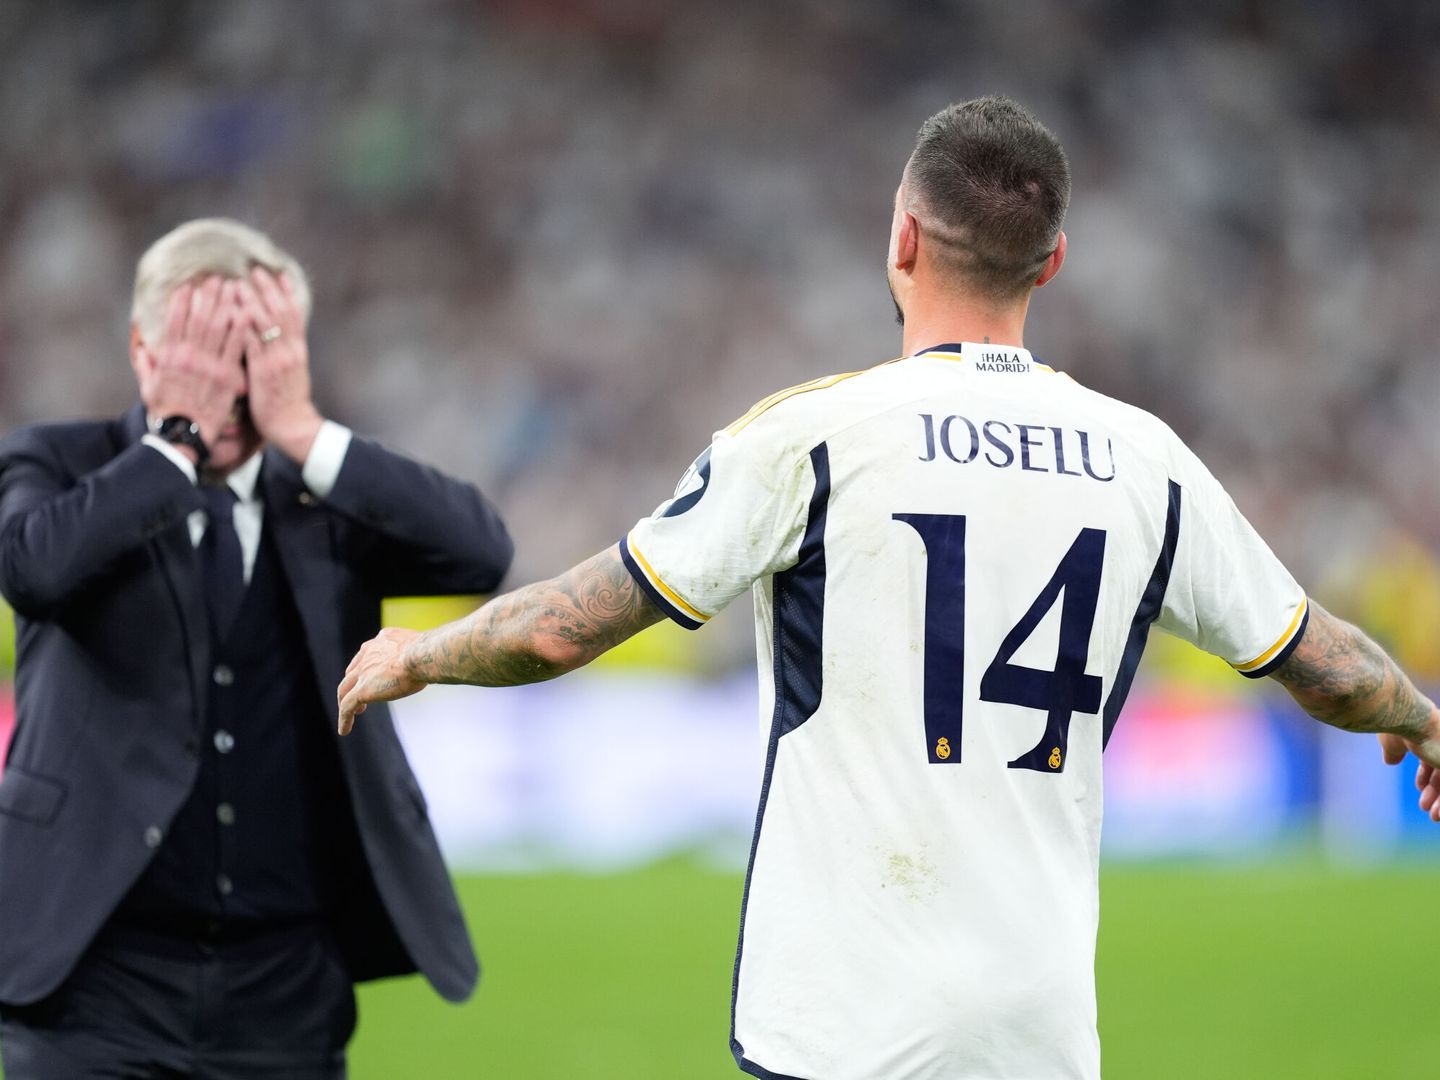 Ancelotti, emocionado, se lleva las manos a los ojos ante Joselu. (AFP7)